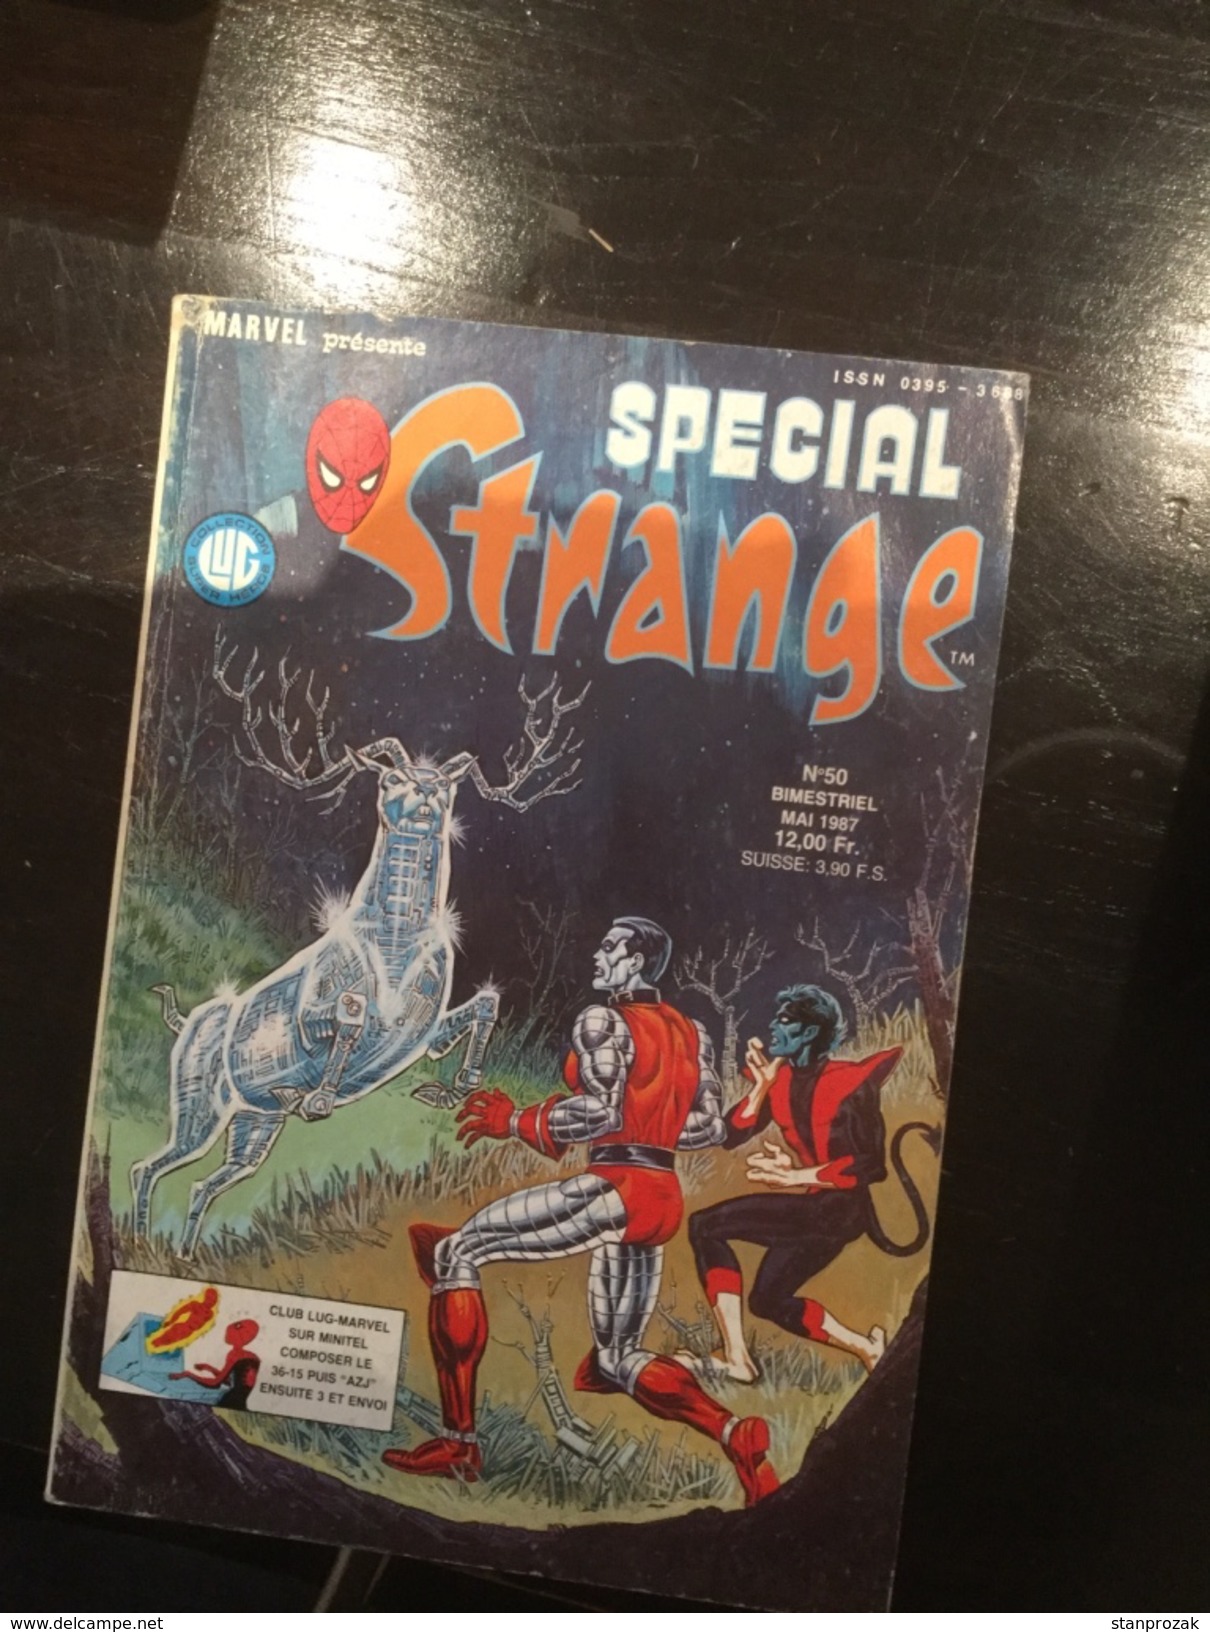 Spécial Strange 50 - Special Strange